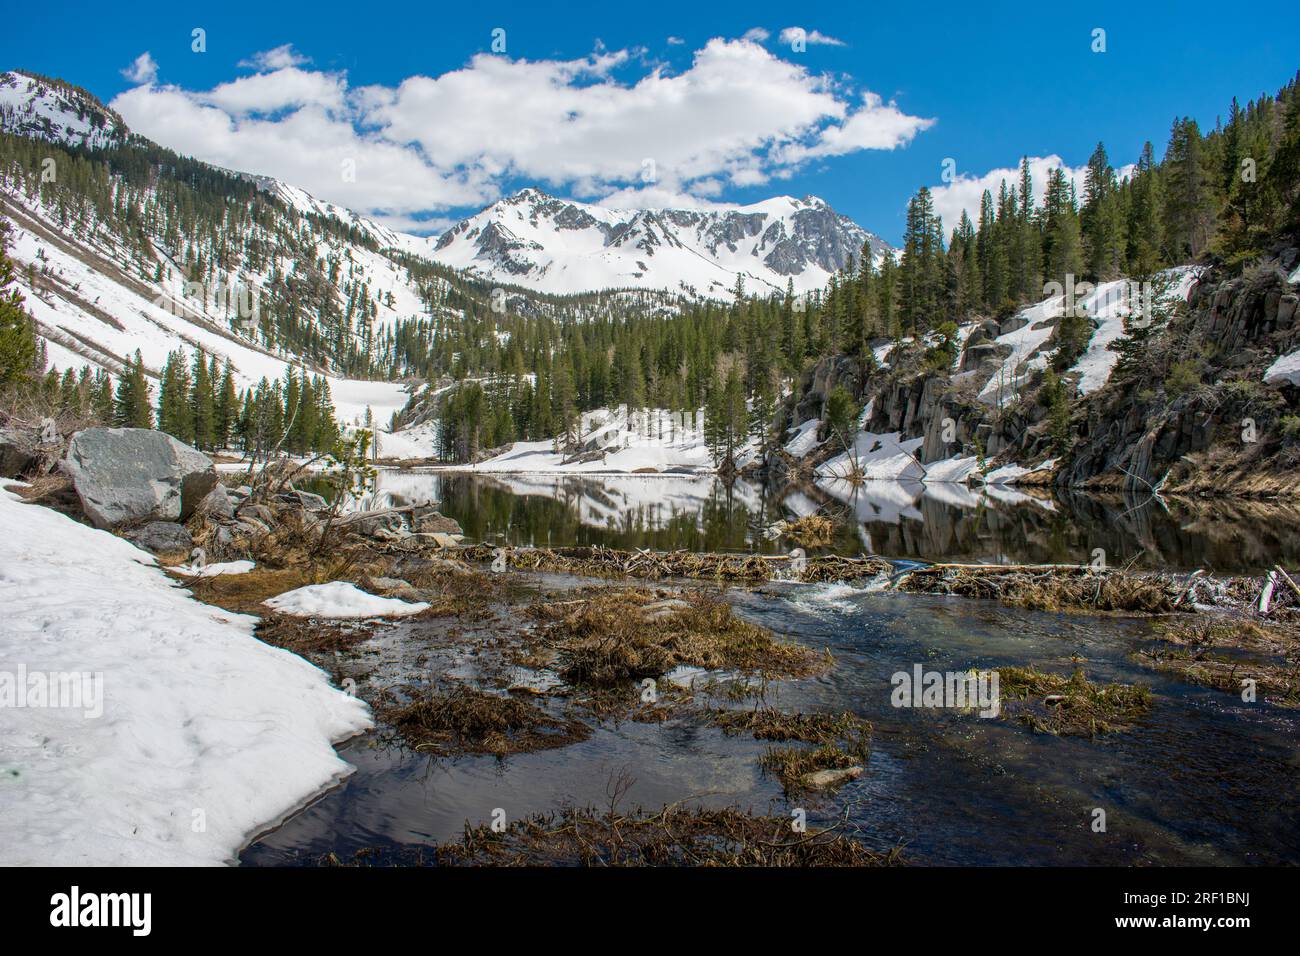 Le sentier immaculé McGee Pass Trail en Californie dévoile la beauté enchanteresse d'une source High Sierra, avec la fonte des neiges alimentant les ruisseaux clairs et le reflet Banque D'Images